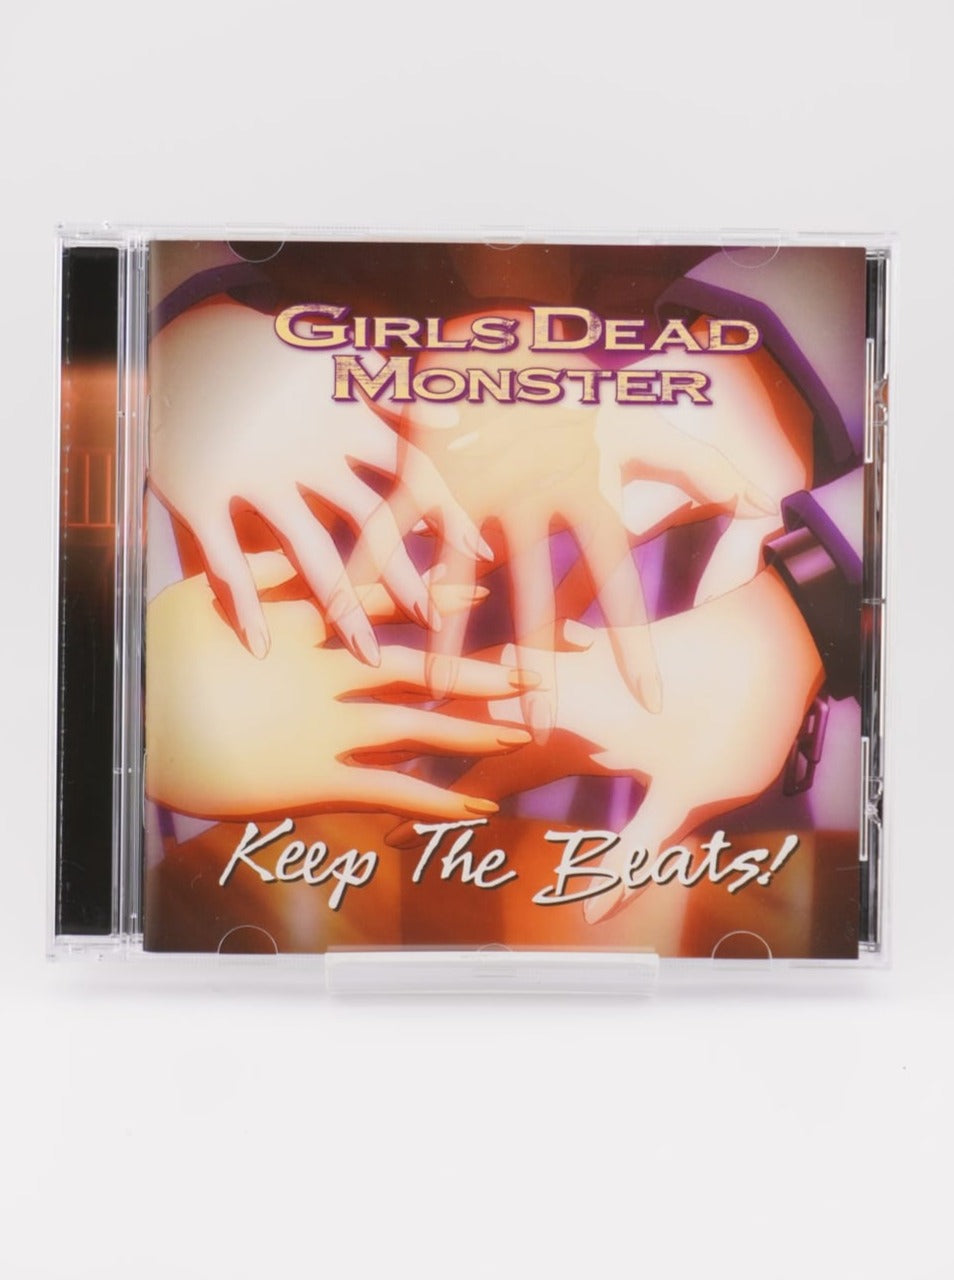 Keep The Beats! / Girls Dead Monster (Angel Beats)